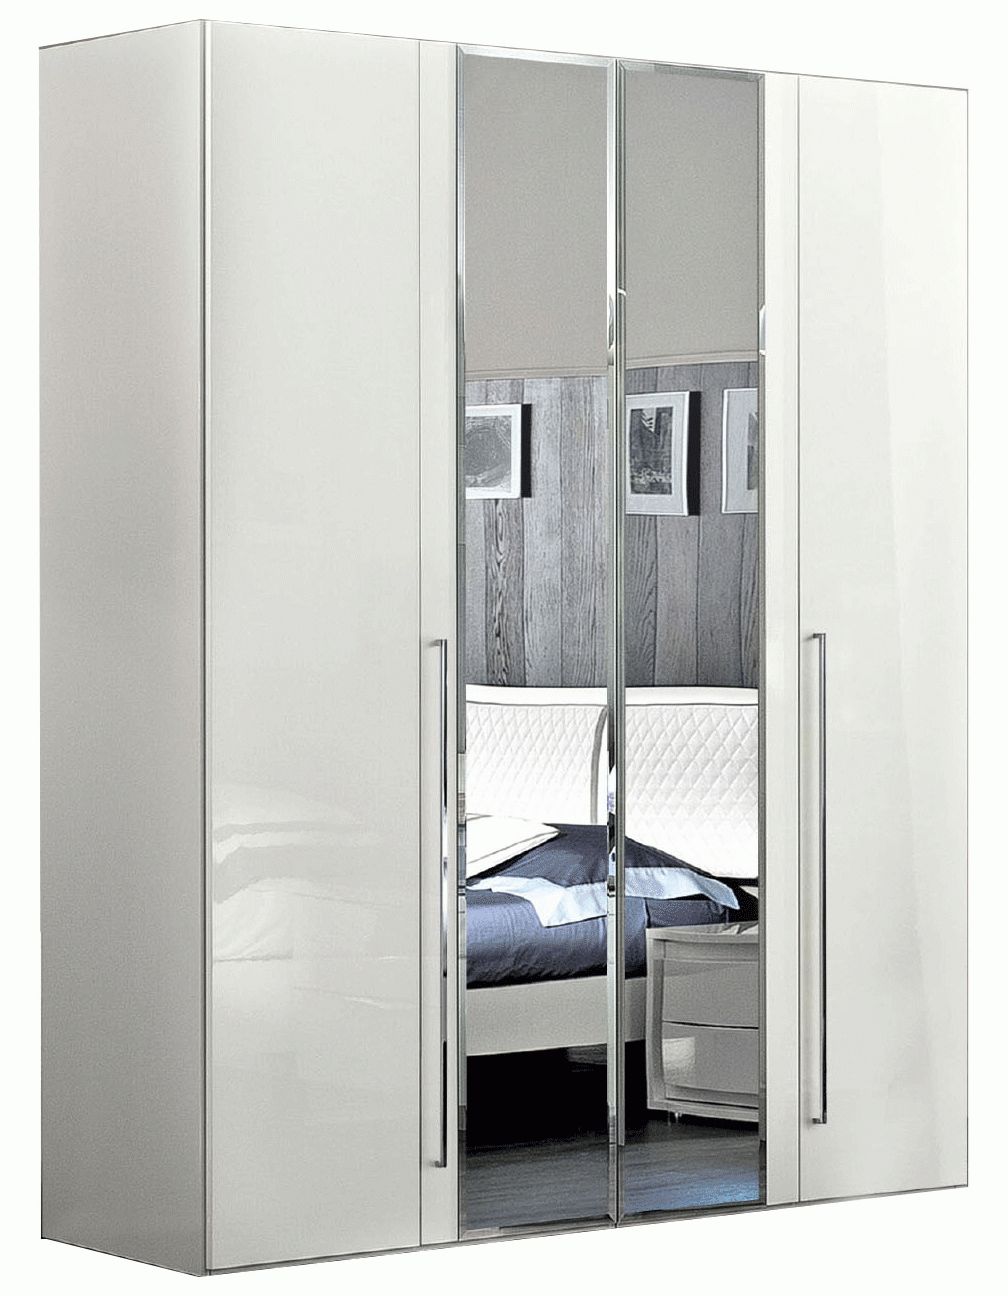 Dama Bianca 4 Door Glass Doors Wardrobe White, Wardrobes, Bedroom Furniture Throughout Wardrobes 4 Doors (View 7 of 15)